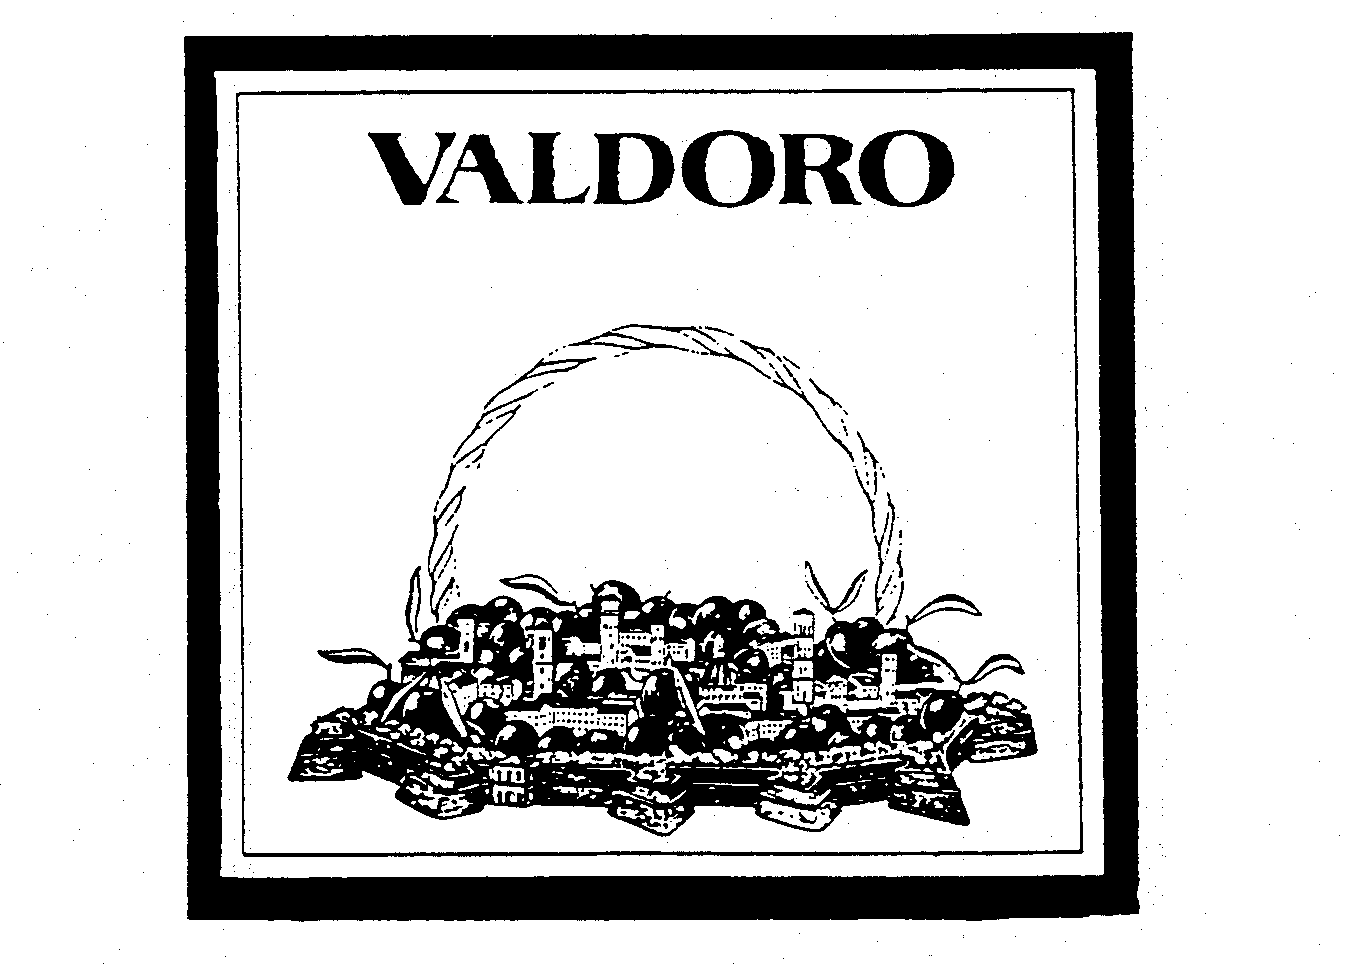  VALDORO